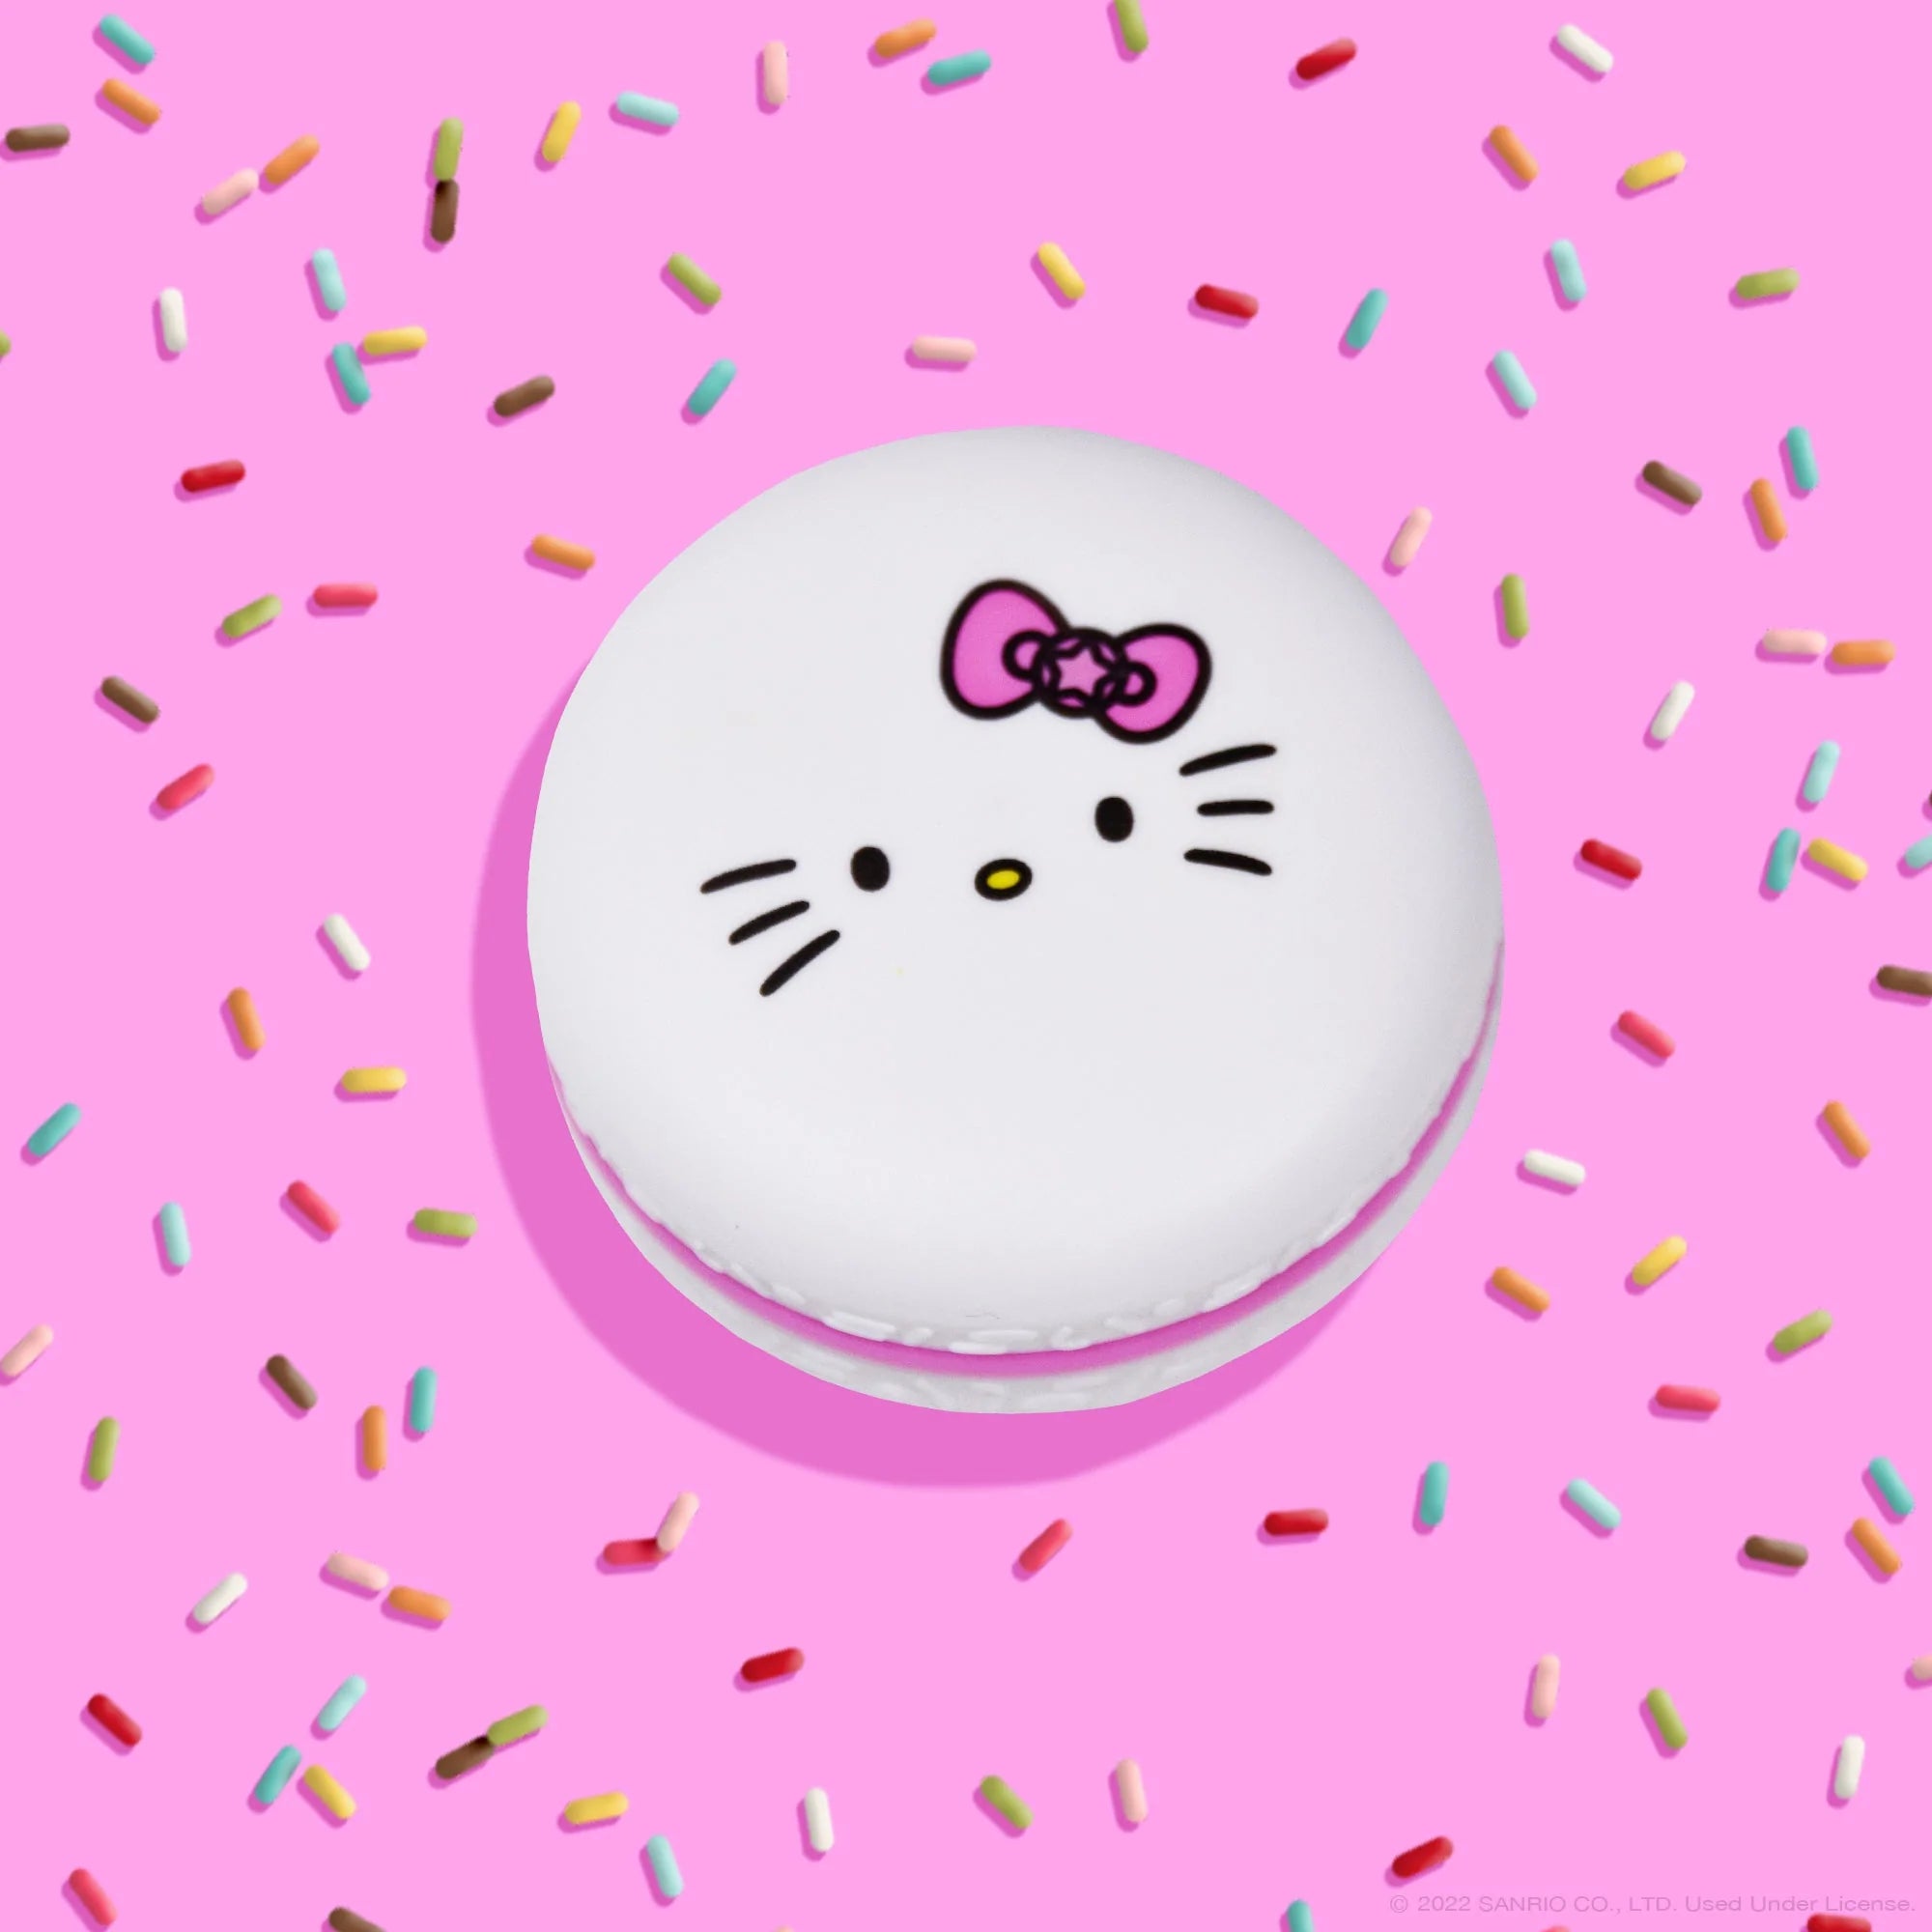 The Creme Shop - Hello Kitty Macaron Lip Balm - Sweet Sprinkles